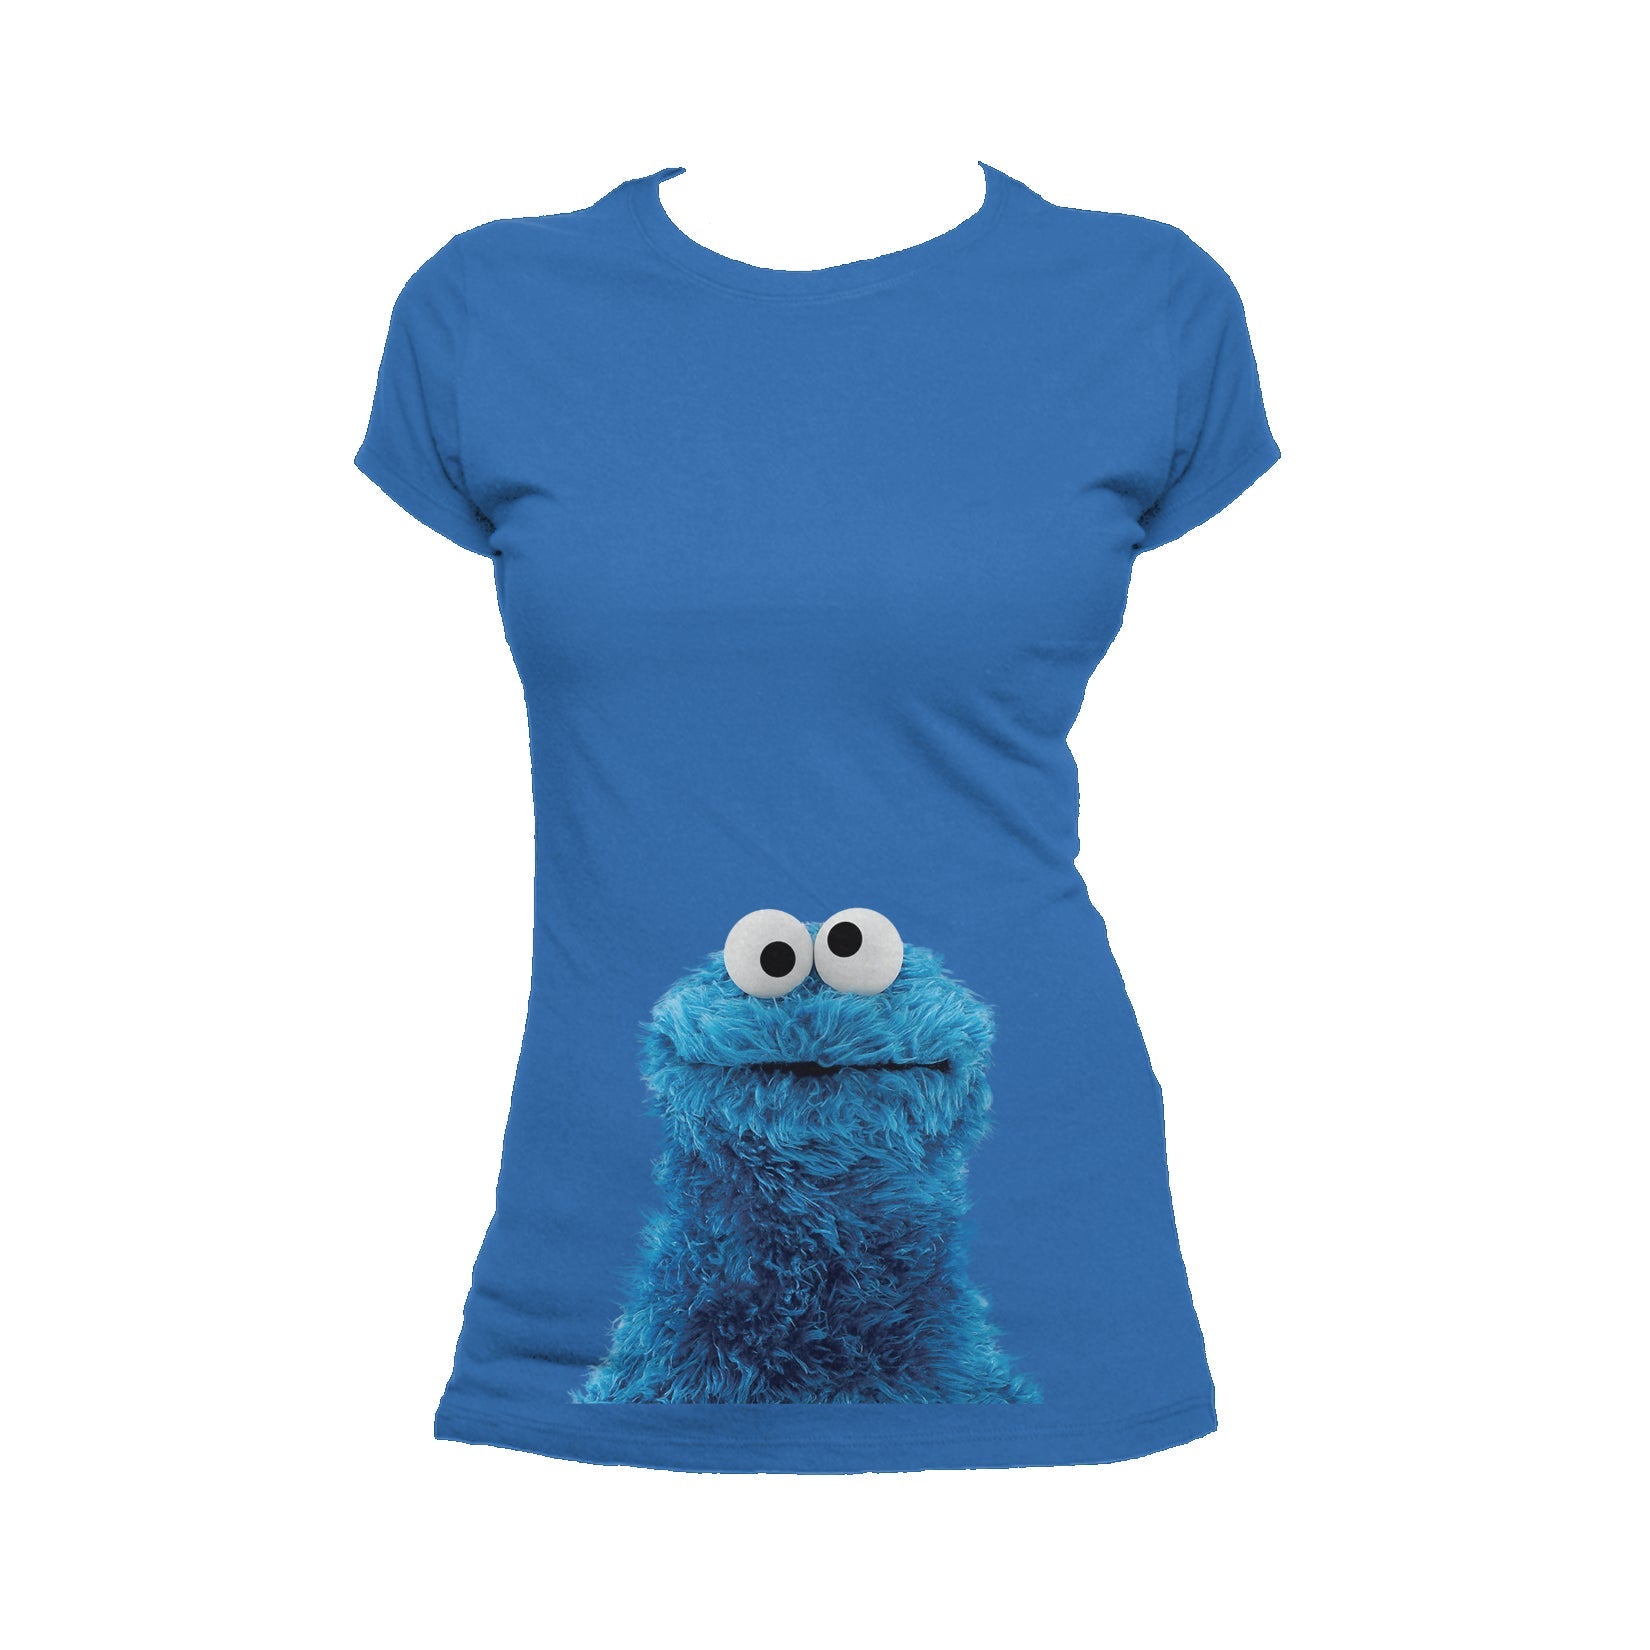 Sesame Street Cookie Monster Photo Head Official Women's T-Shirt ()